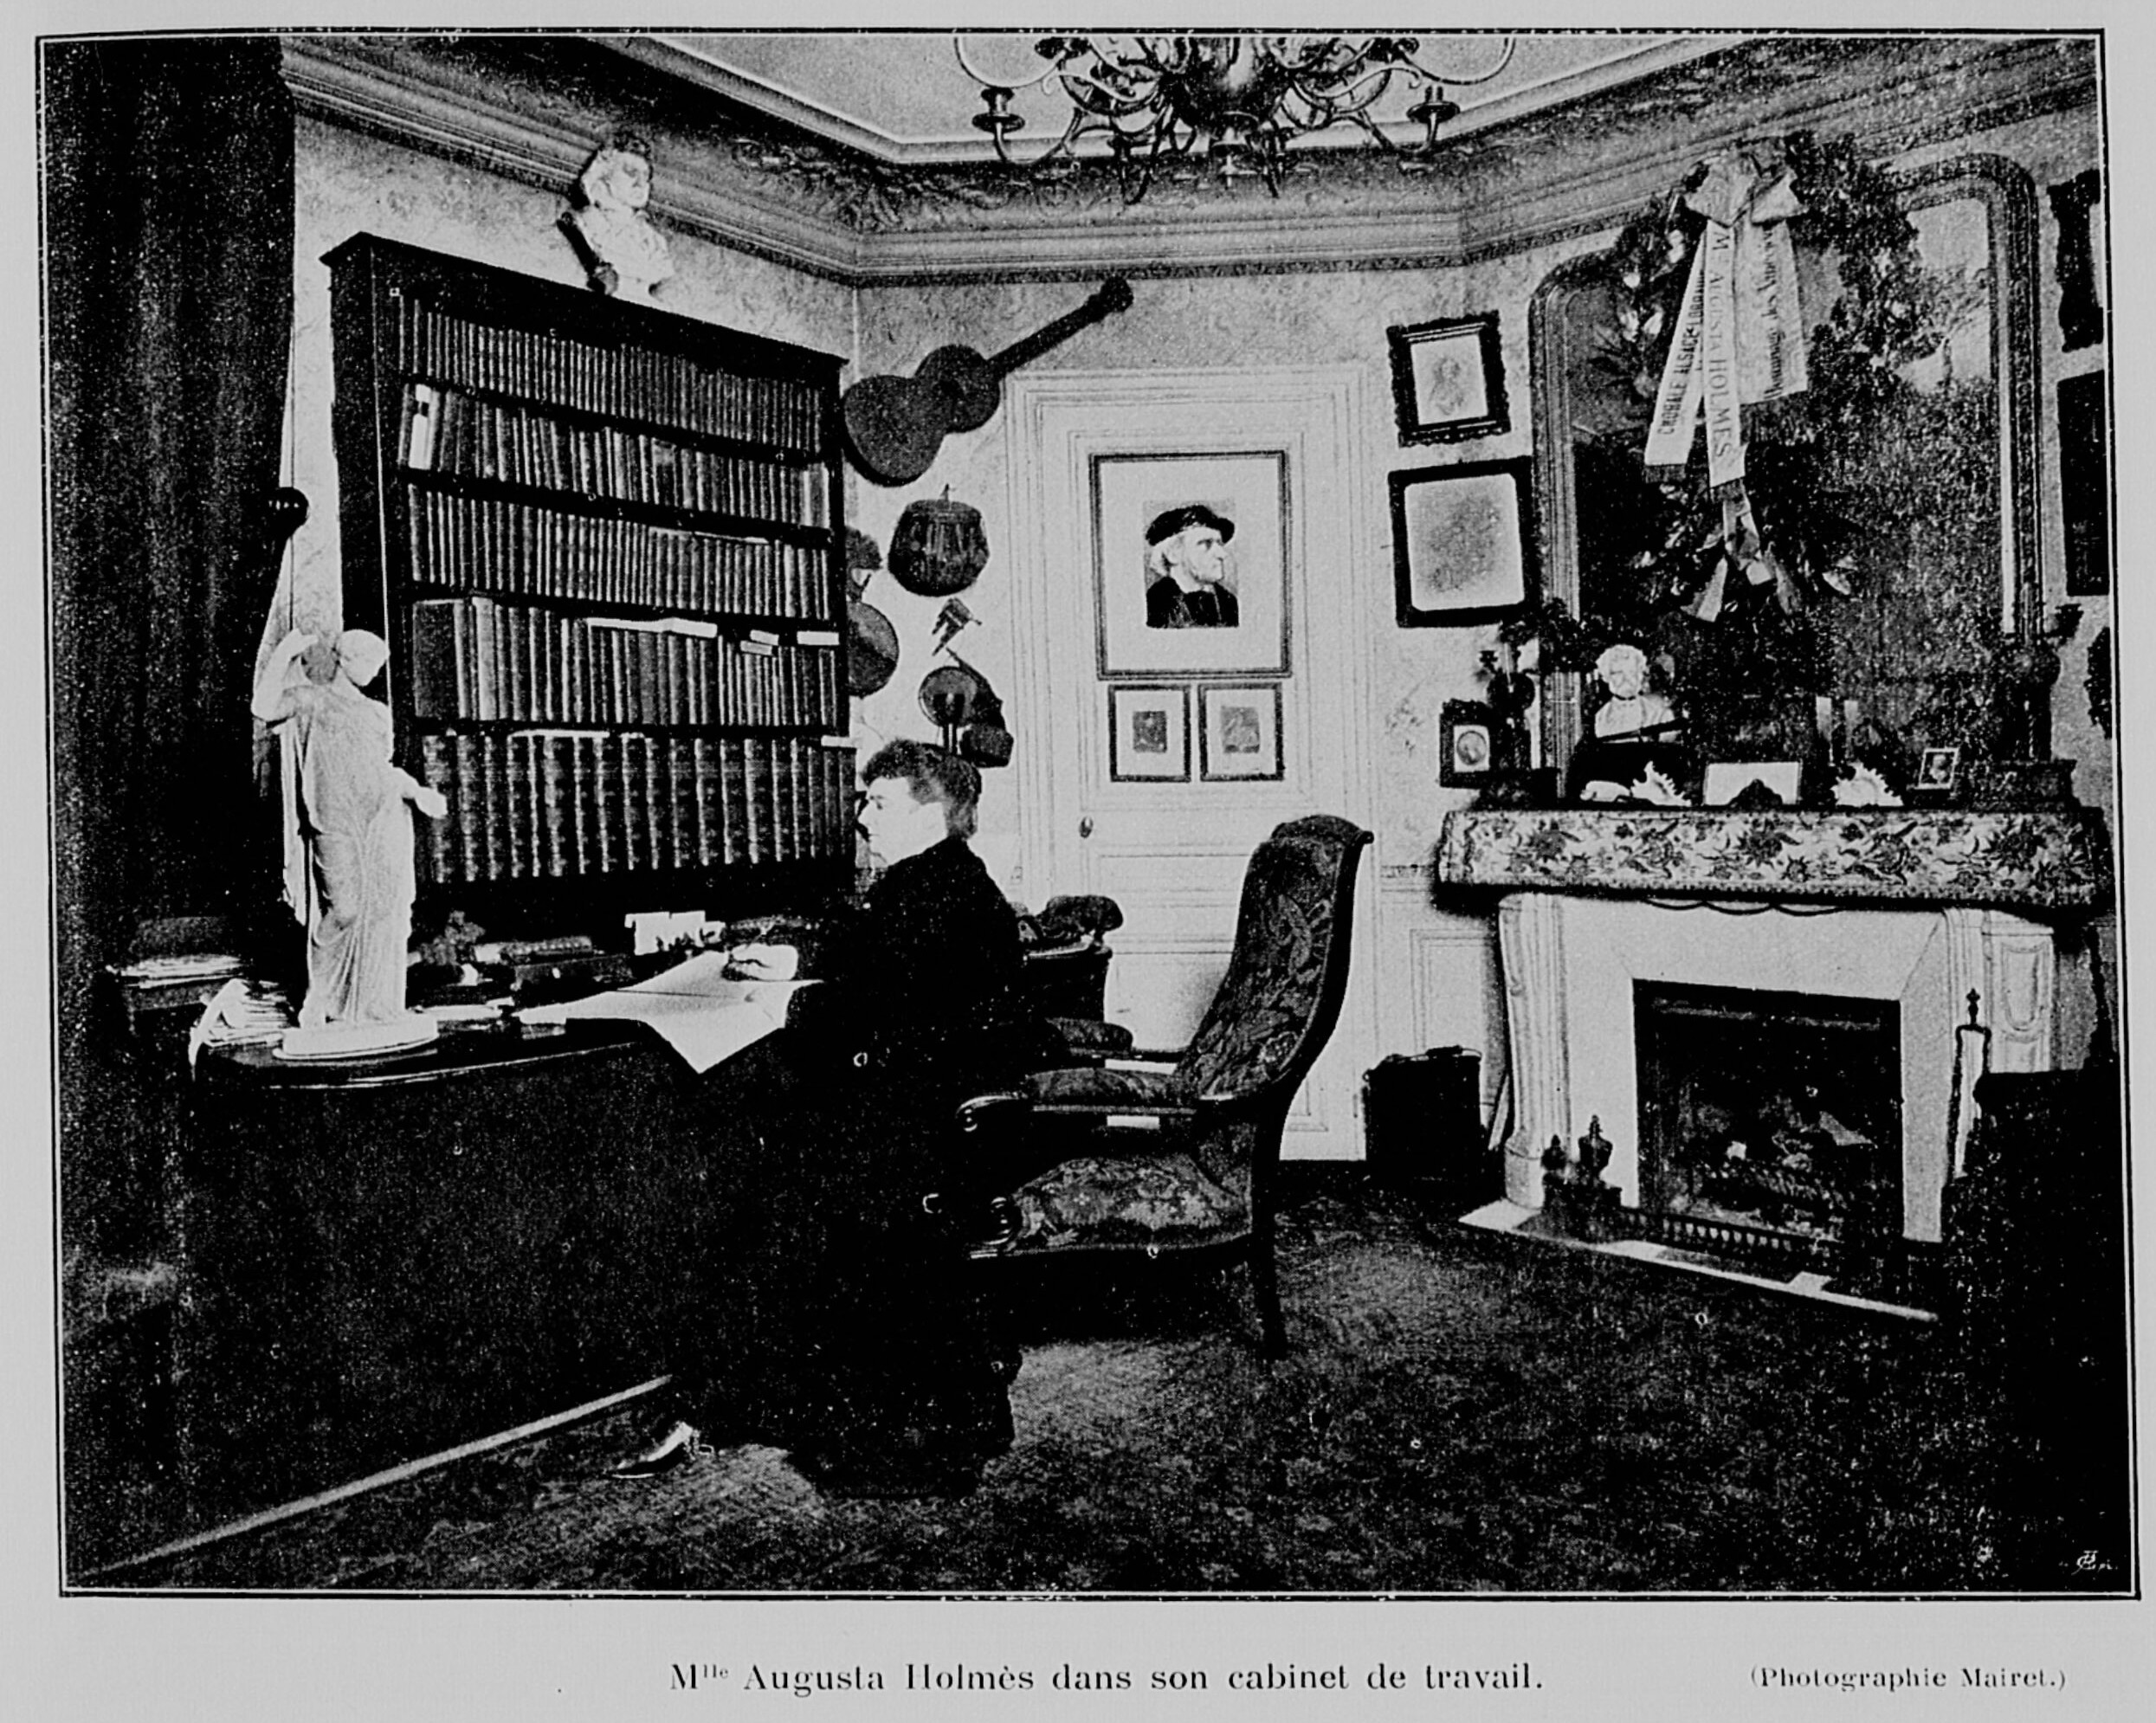 Mlle Augusta Holmès dans son cabinet de travail